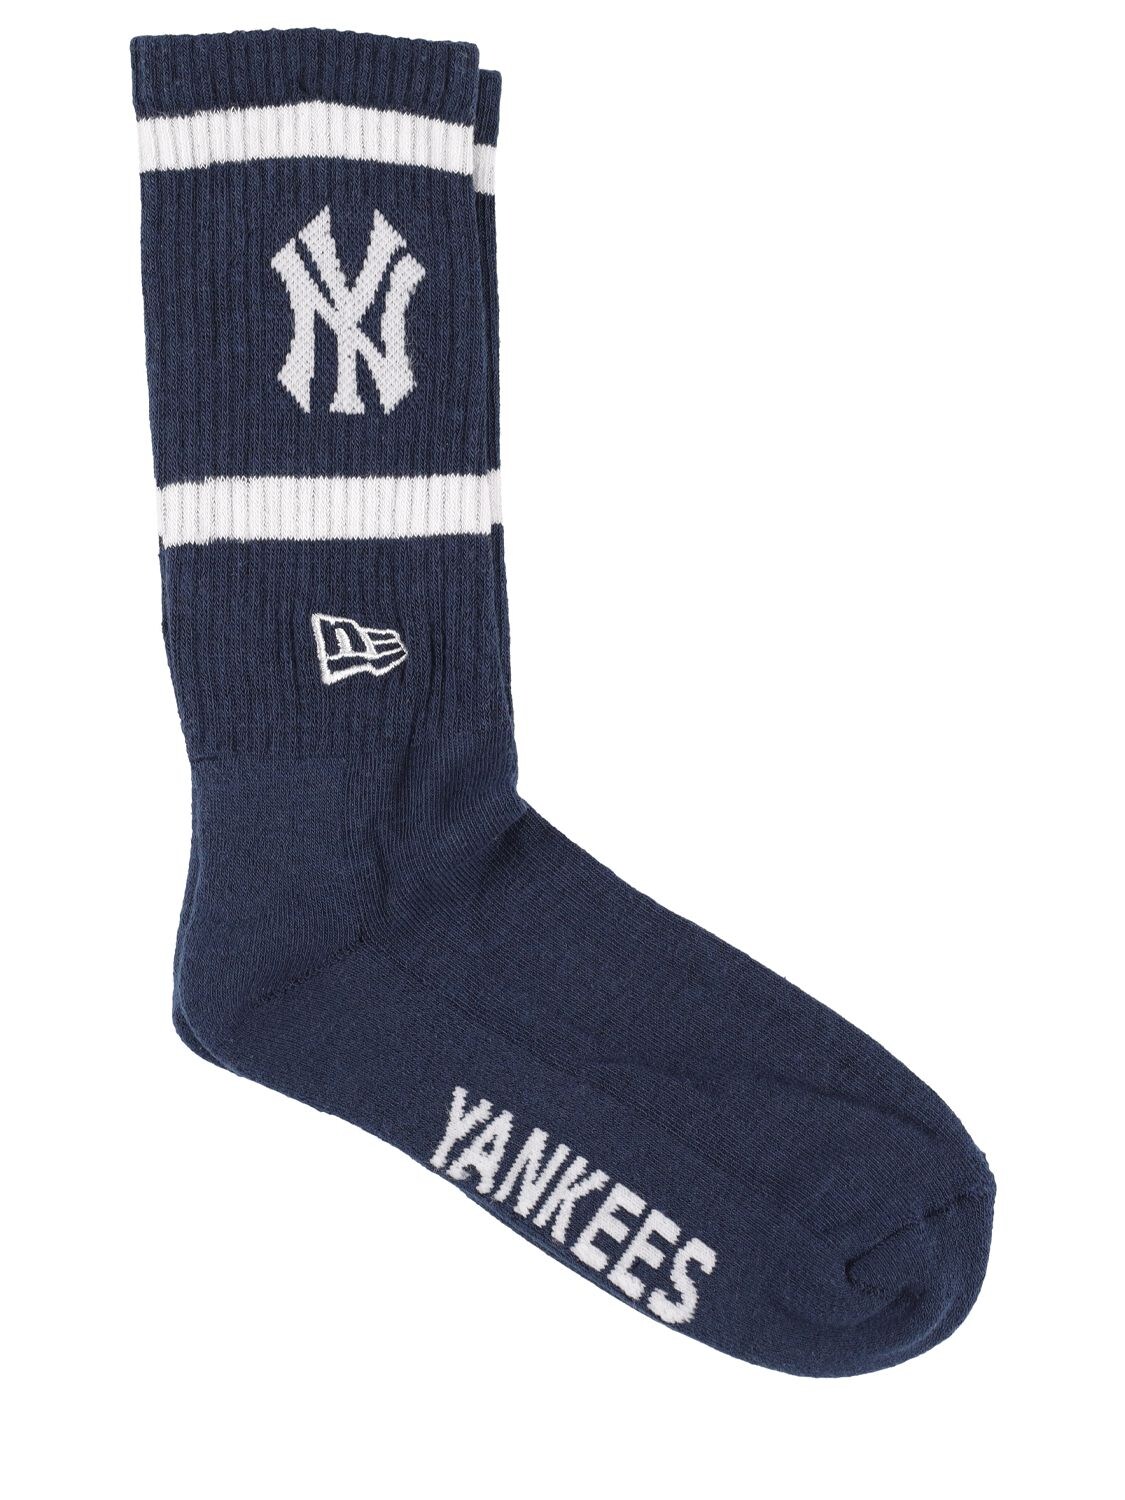 Ny Yankees Logo Ribbed Socks - NEW ERA - Modalova